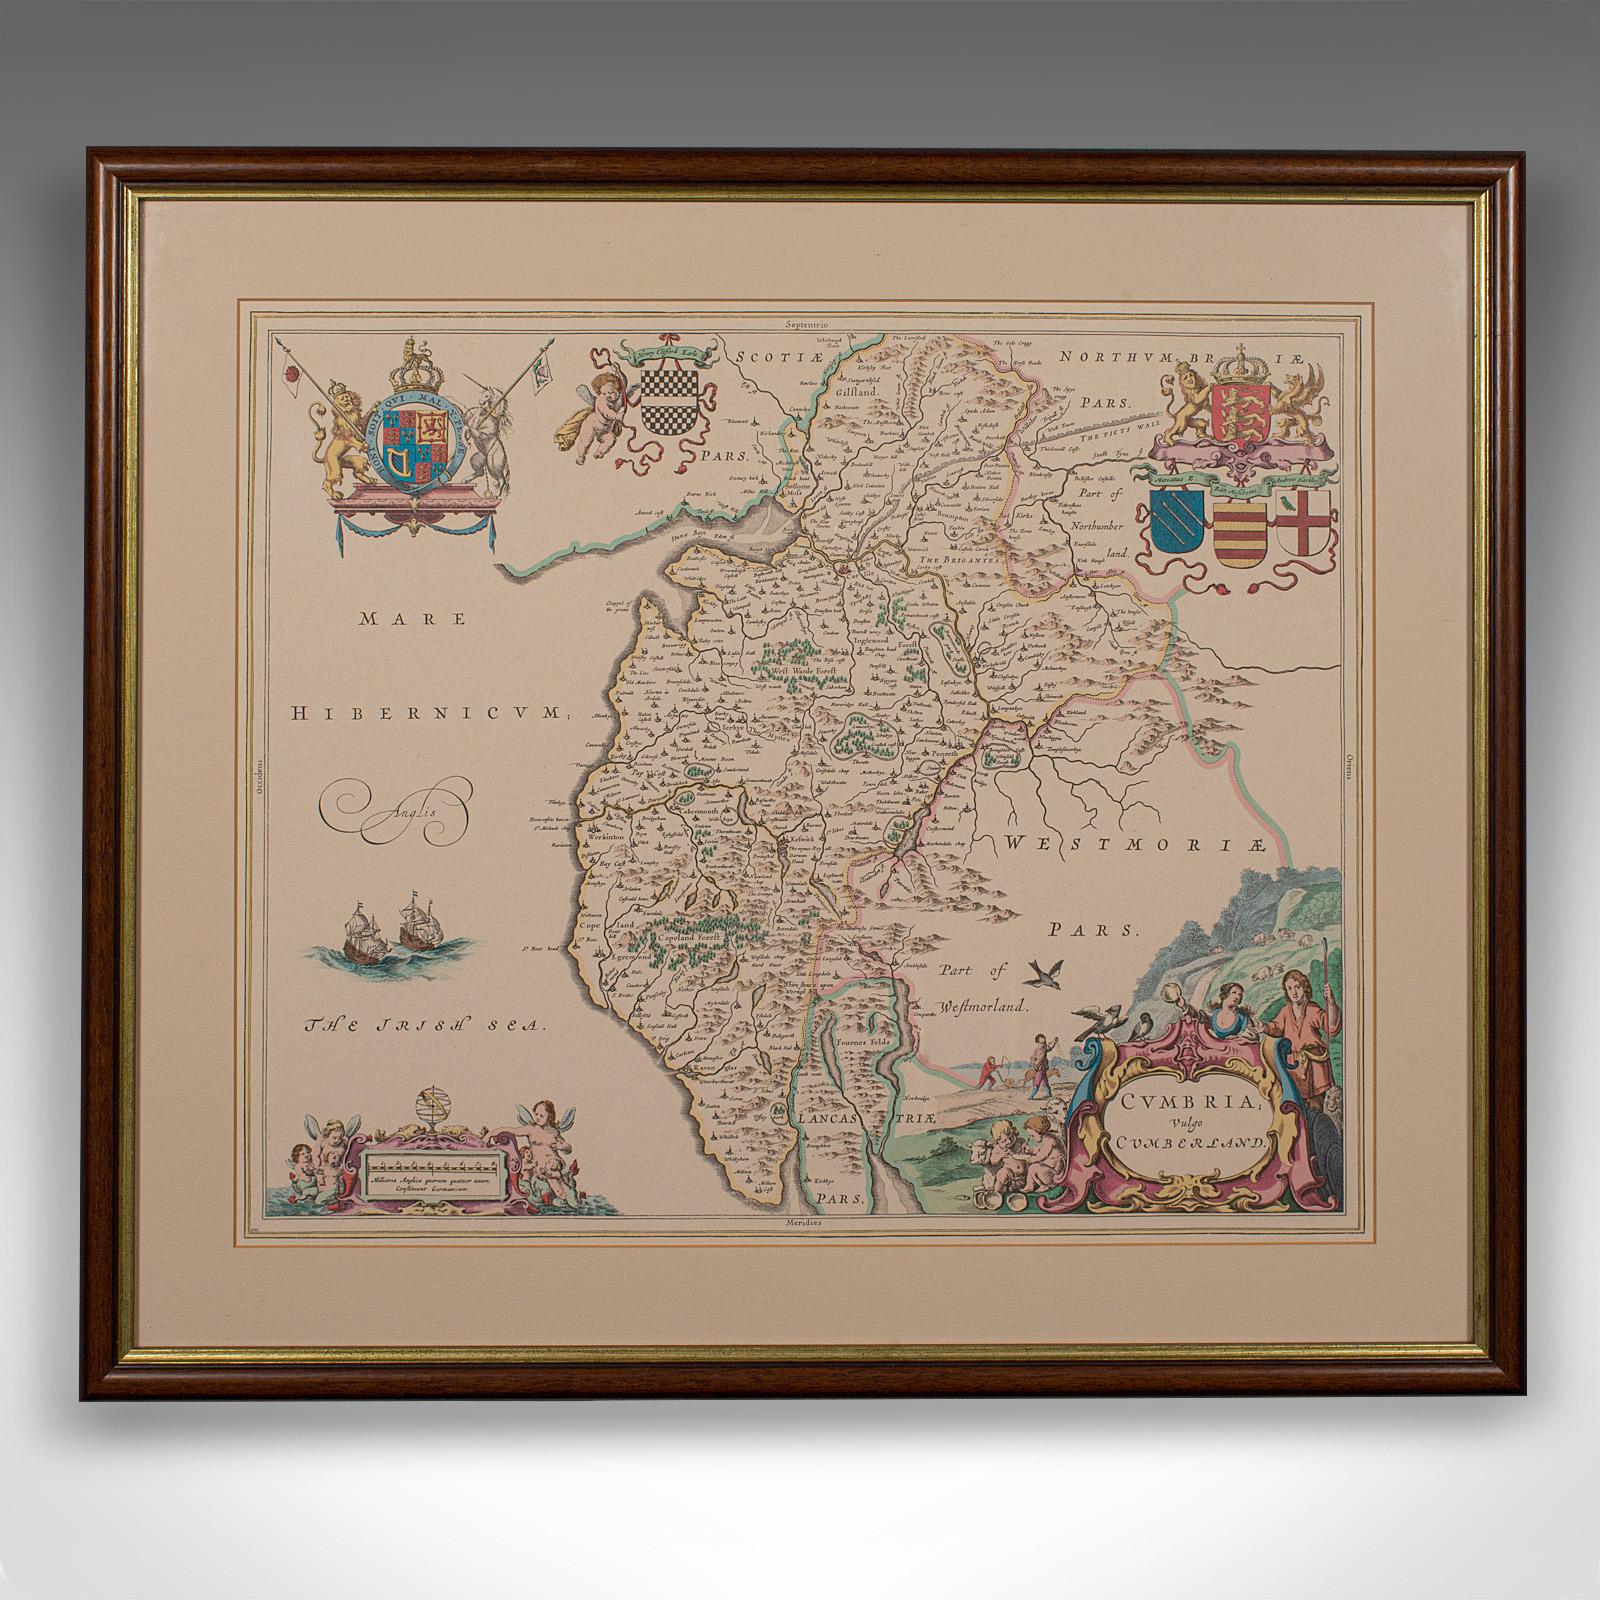 Il s'agit d'une carte lithographique ancienne de la région de Cumbria. Gravure anglaise encadrée d'intérêt cartographique, datant du début du XVIIIe siècle ou plus tard.

Charmante lithographie de la région de Cumbria avec d'attrayants charmes